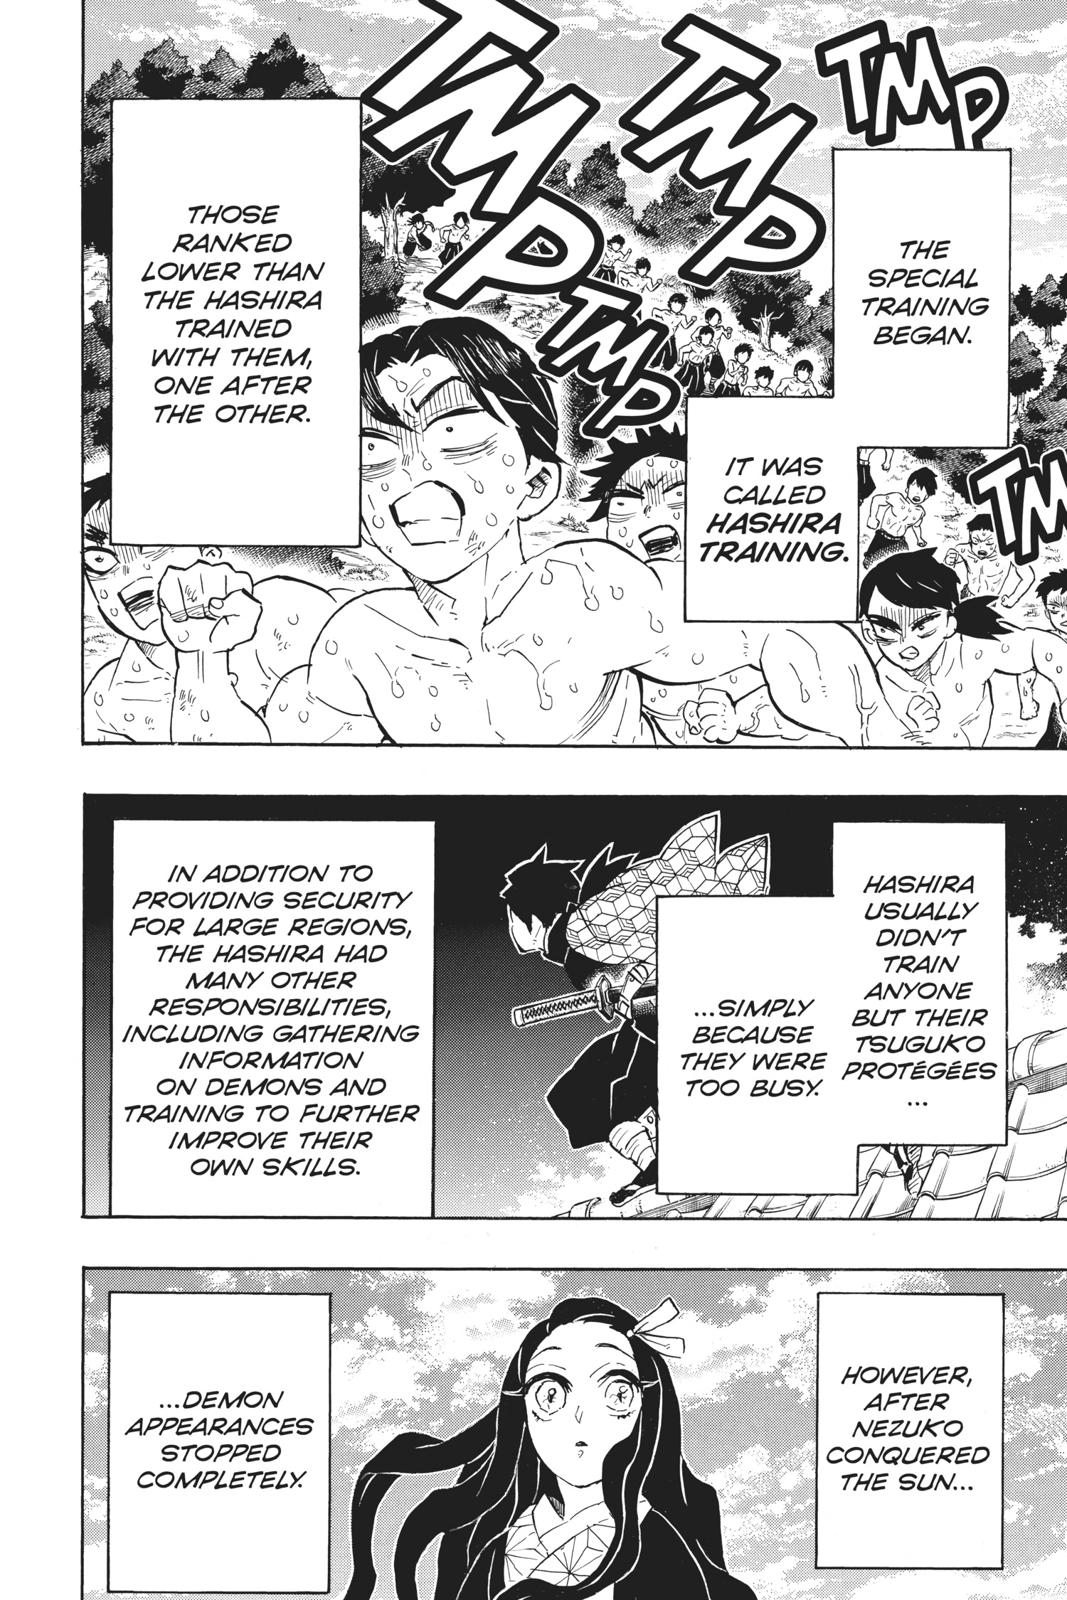 Demon Slayer Manga Manga Chapter - 130 - image 2